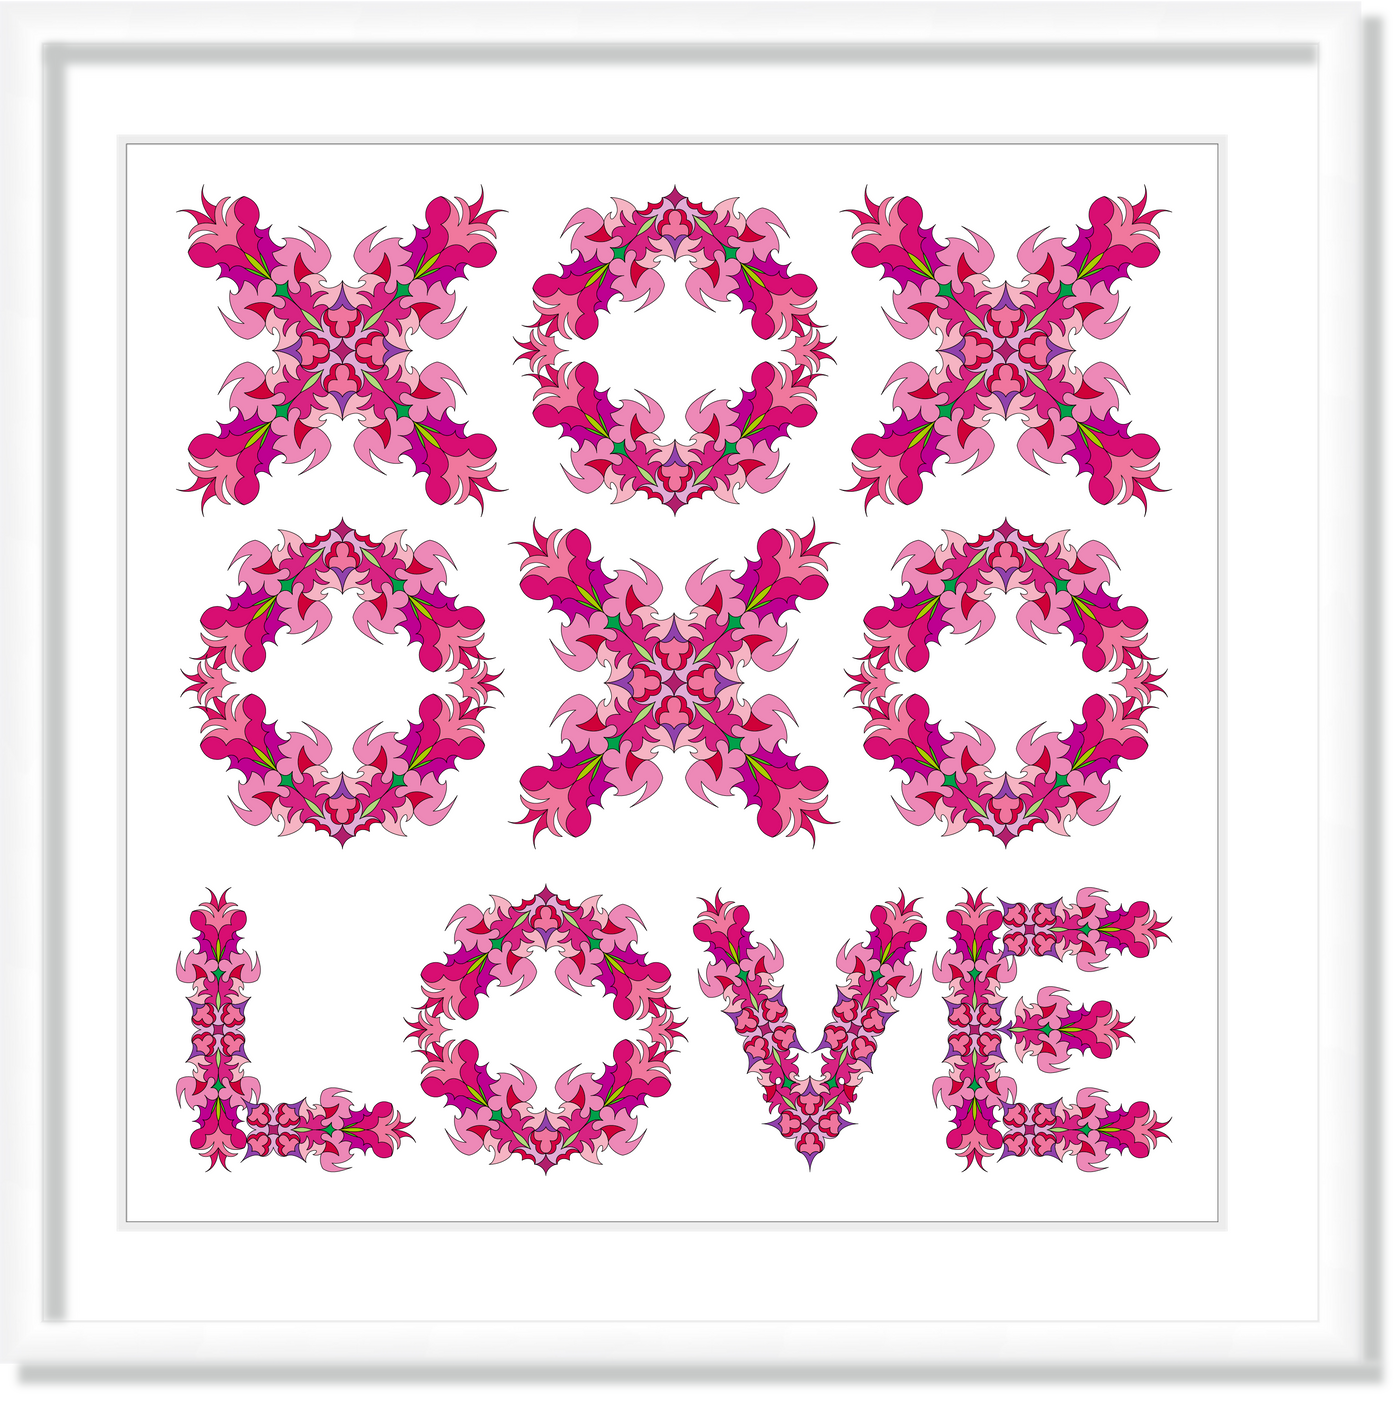 XOX OXO LOVE